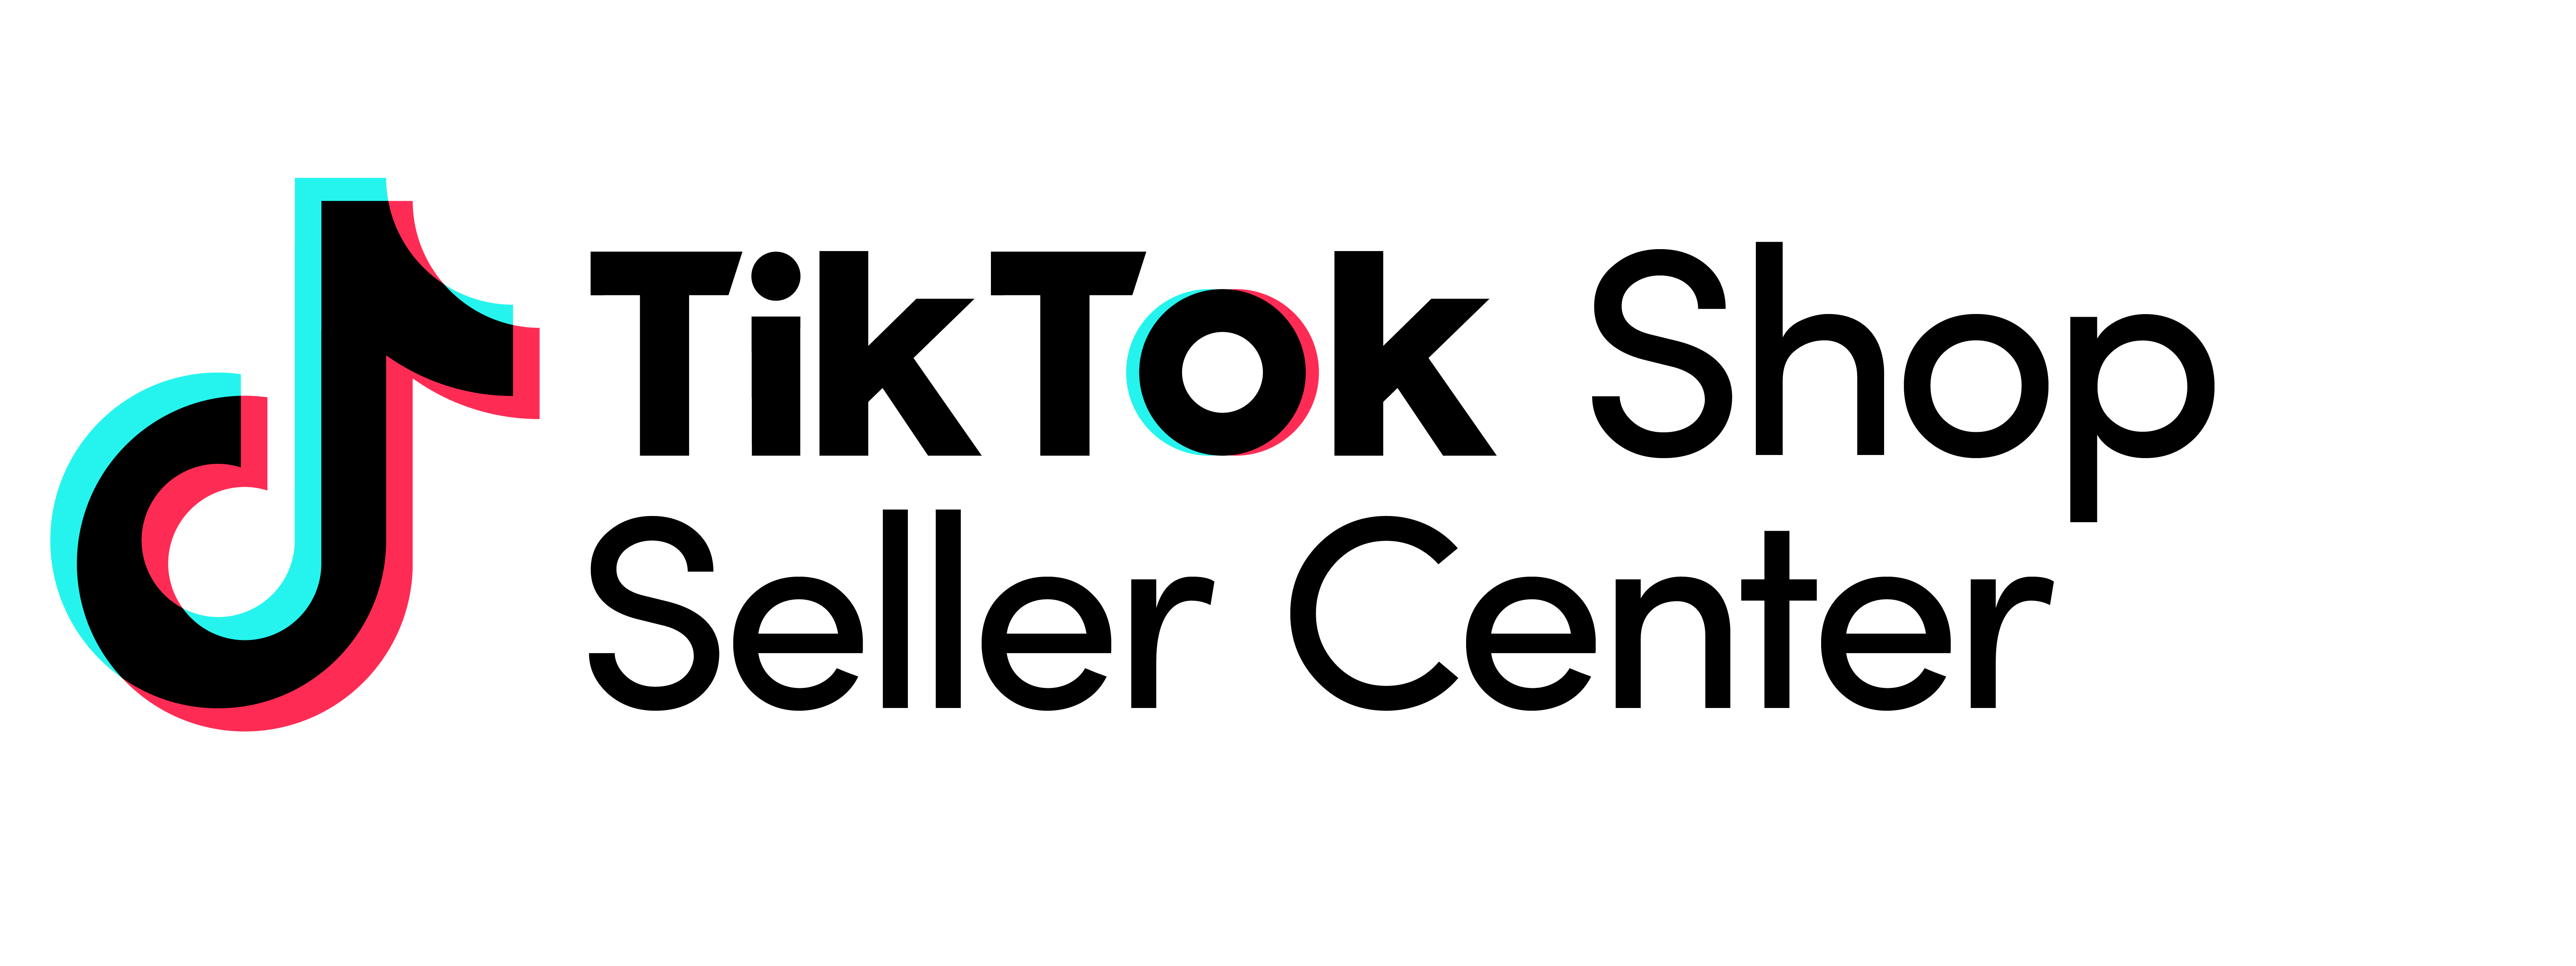 TTS seller center logo.png